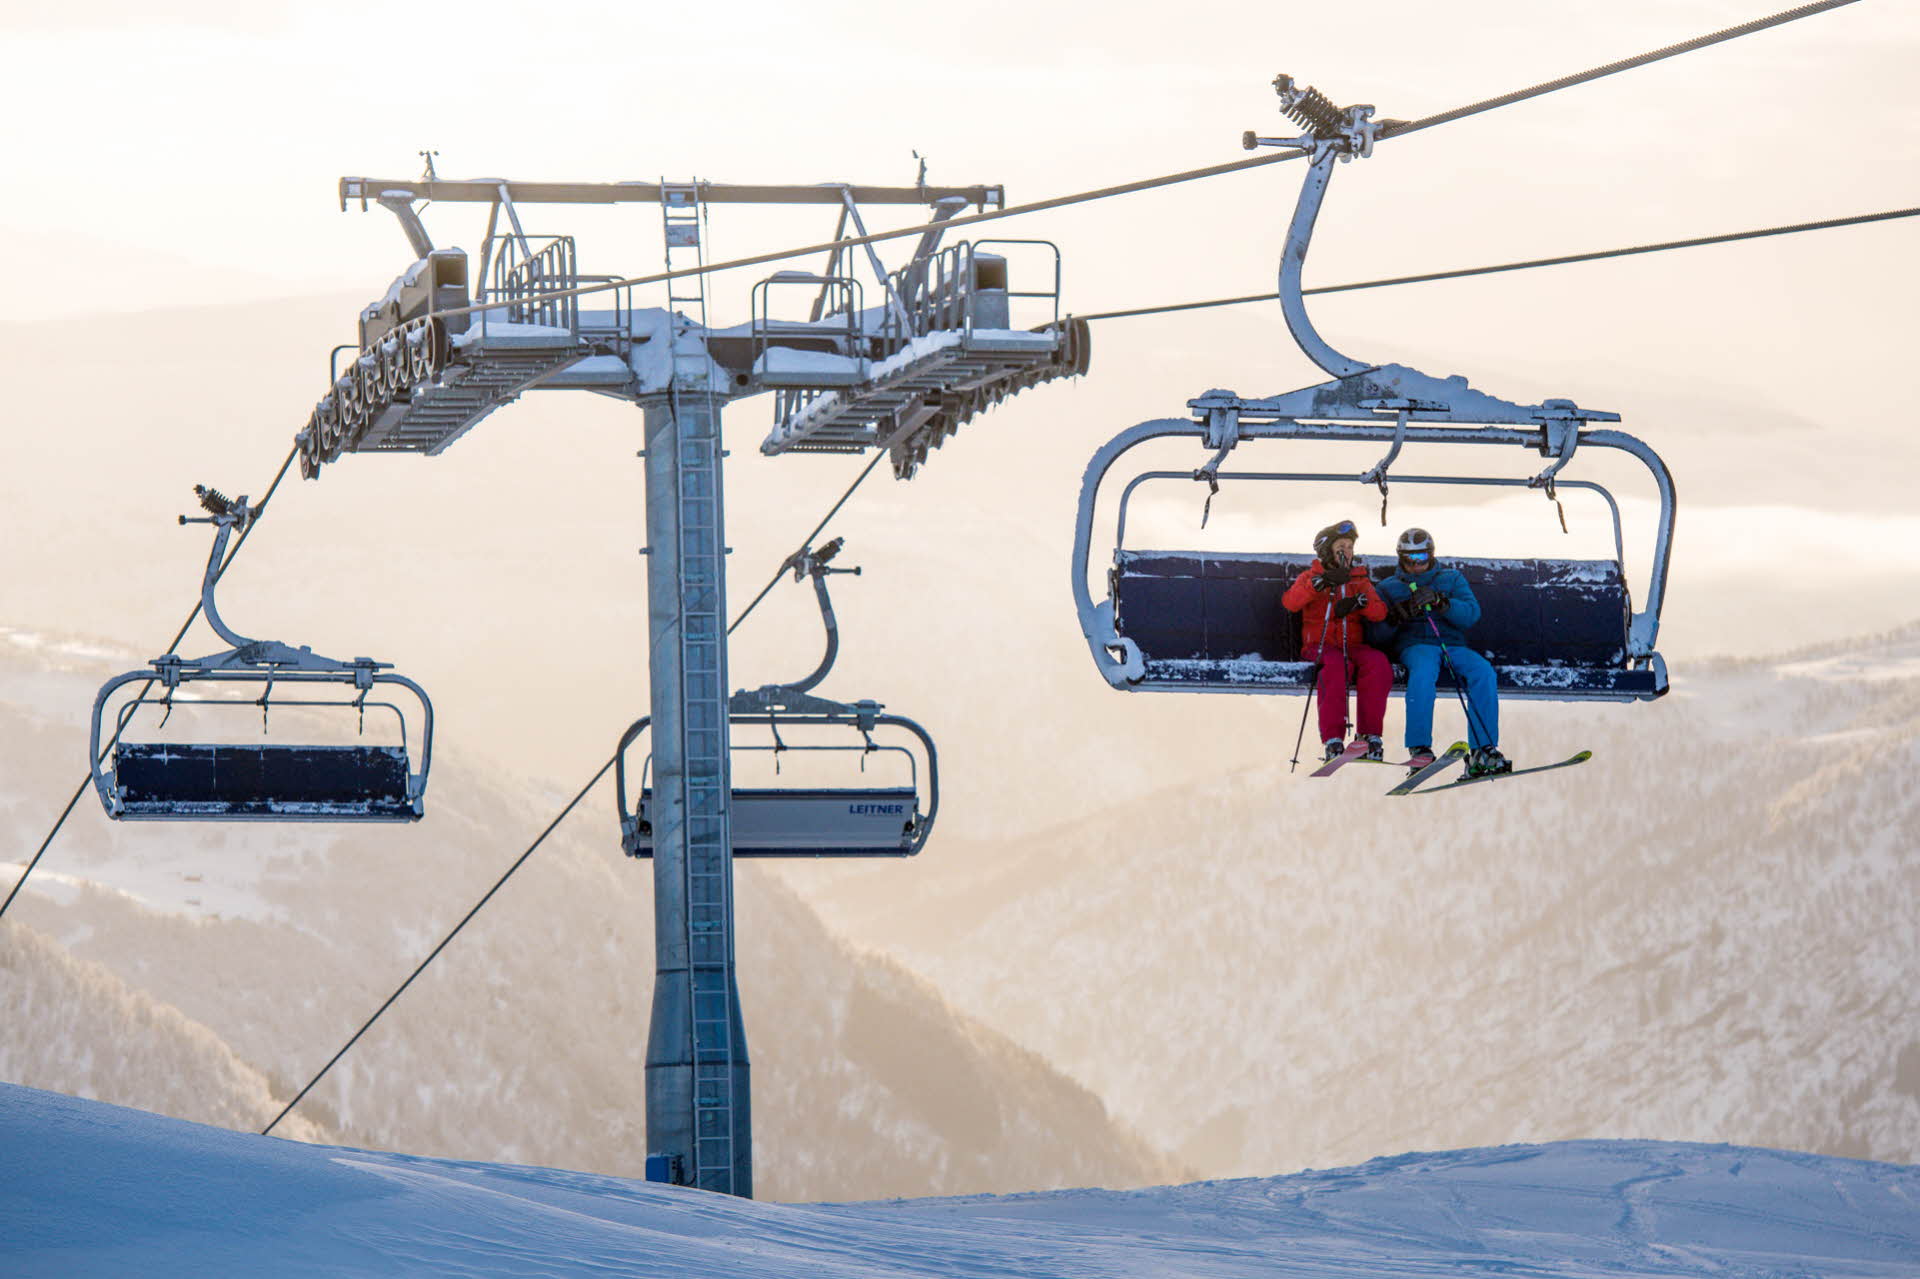 ミルクダレンマウンテンリゾートのスキーリフトにスキーを持って座っている2人